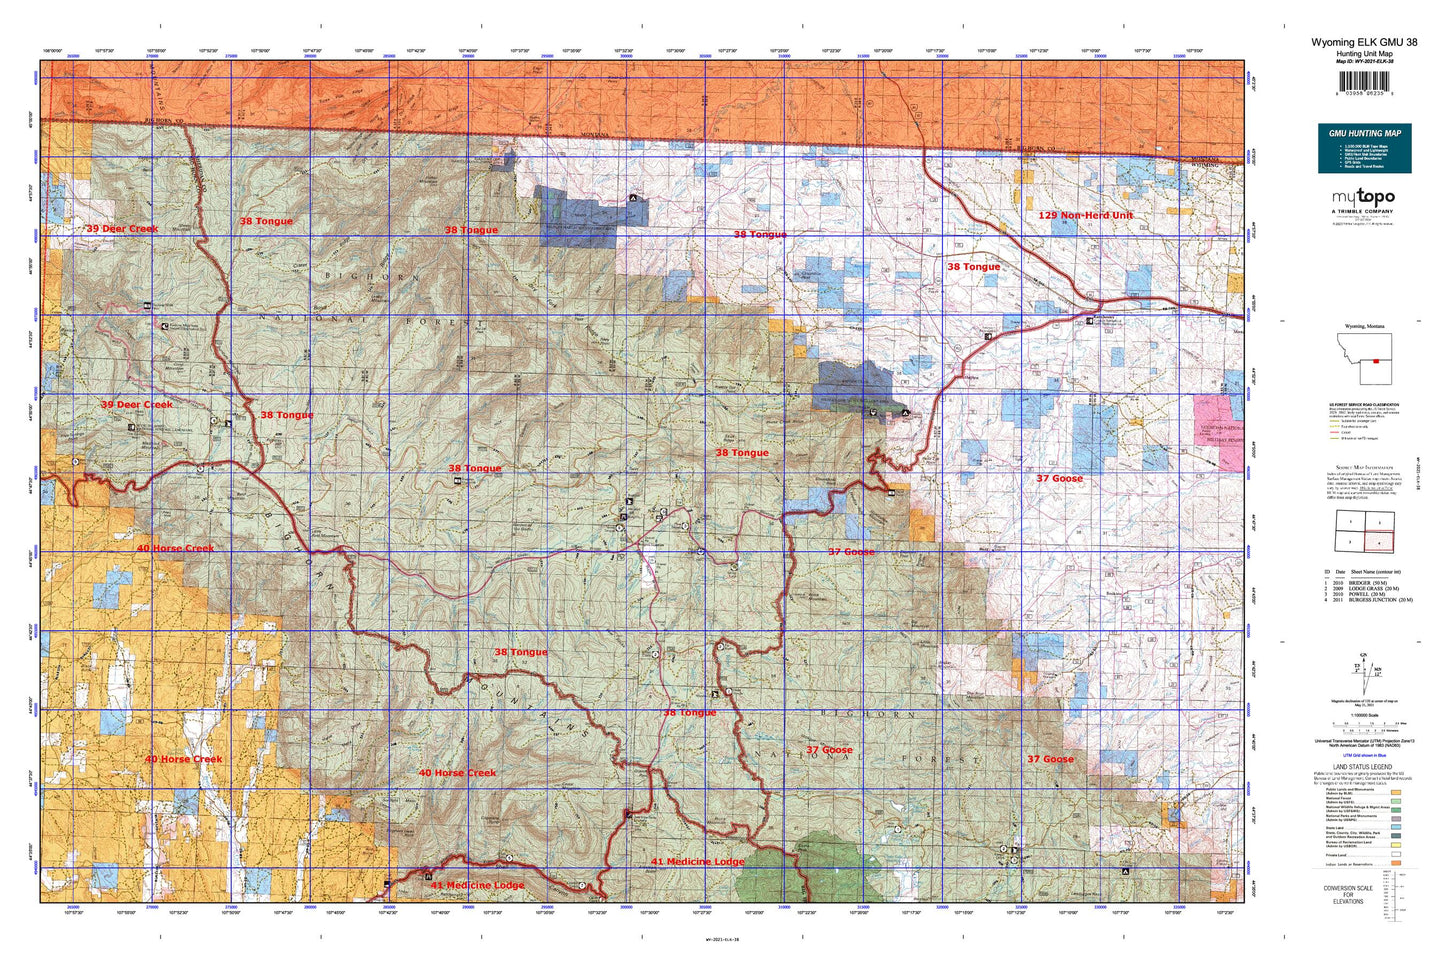 Wyoming Elk GMU 38 Map Image